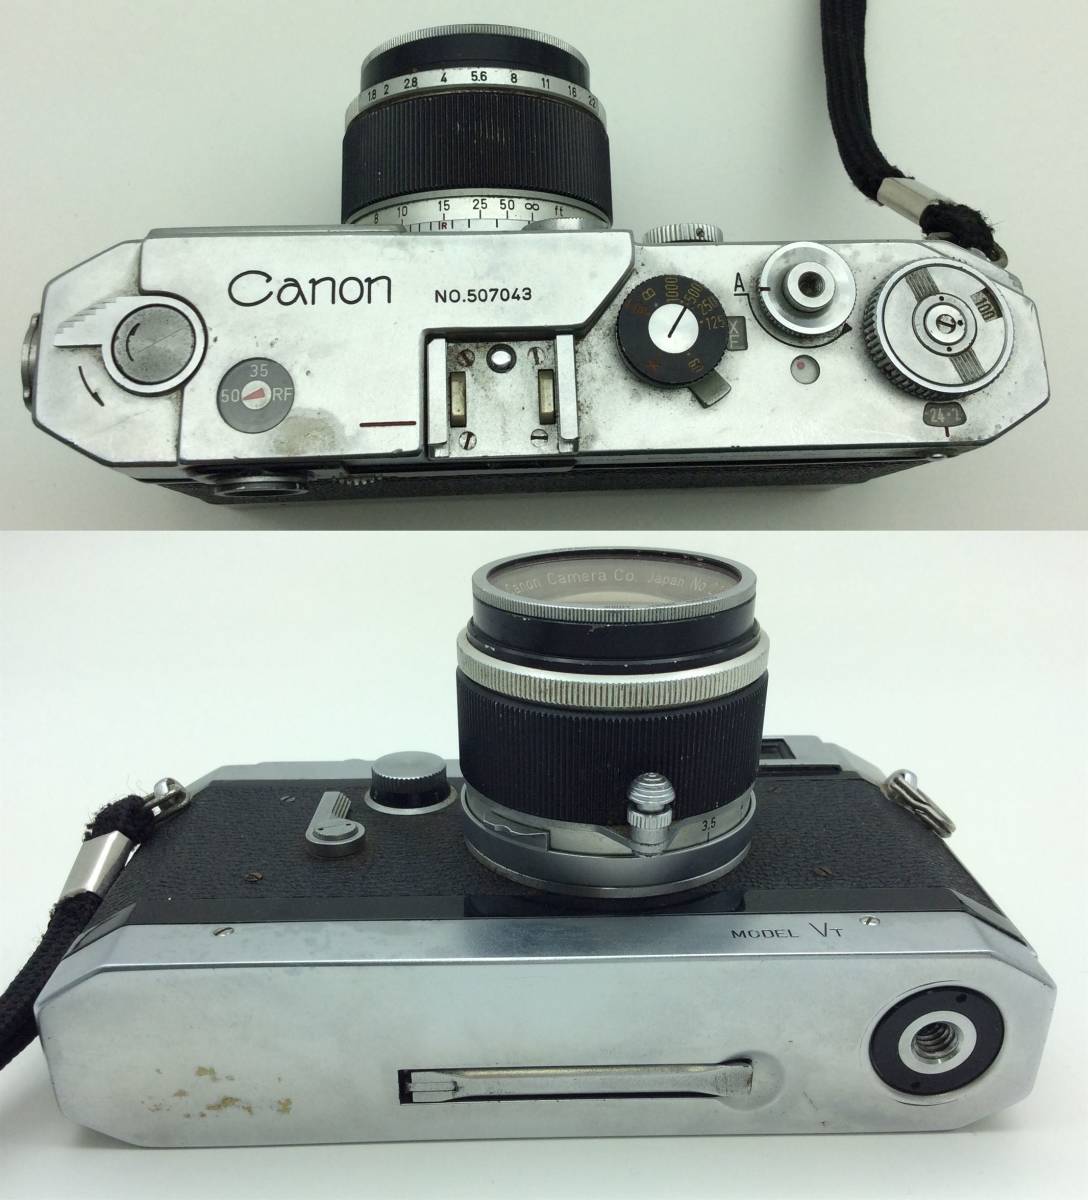 EE29◇〈動作/精度未確認〉Canon キャノン MODEL VT フィルムカメラ / CANON LENS 50mm 1:1.8 レンズ / ジャンク品 ◇ _画像5